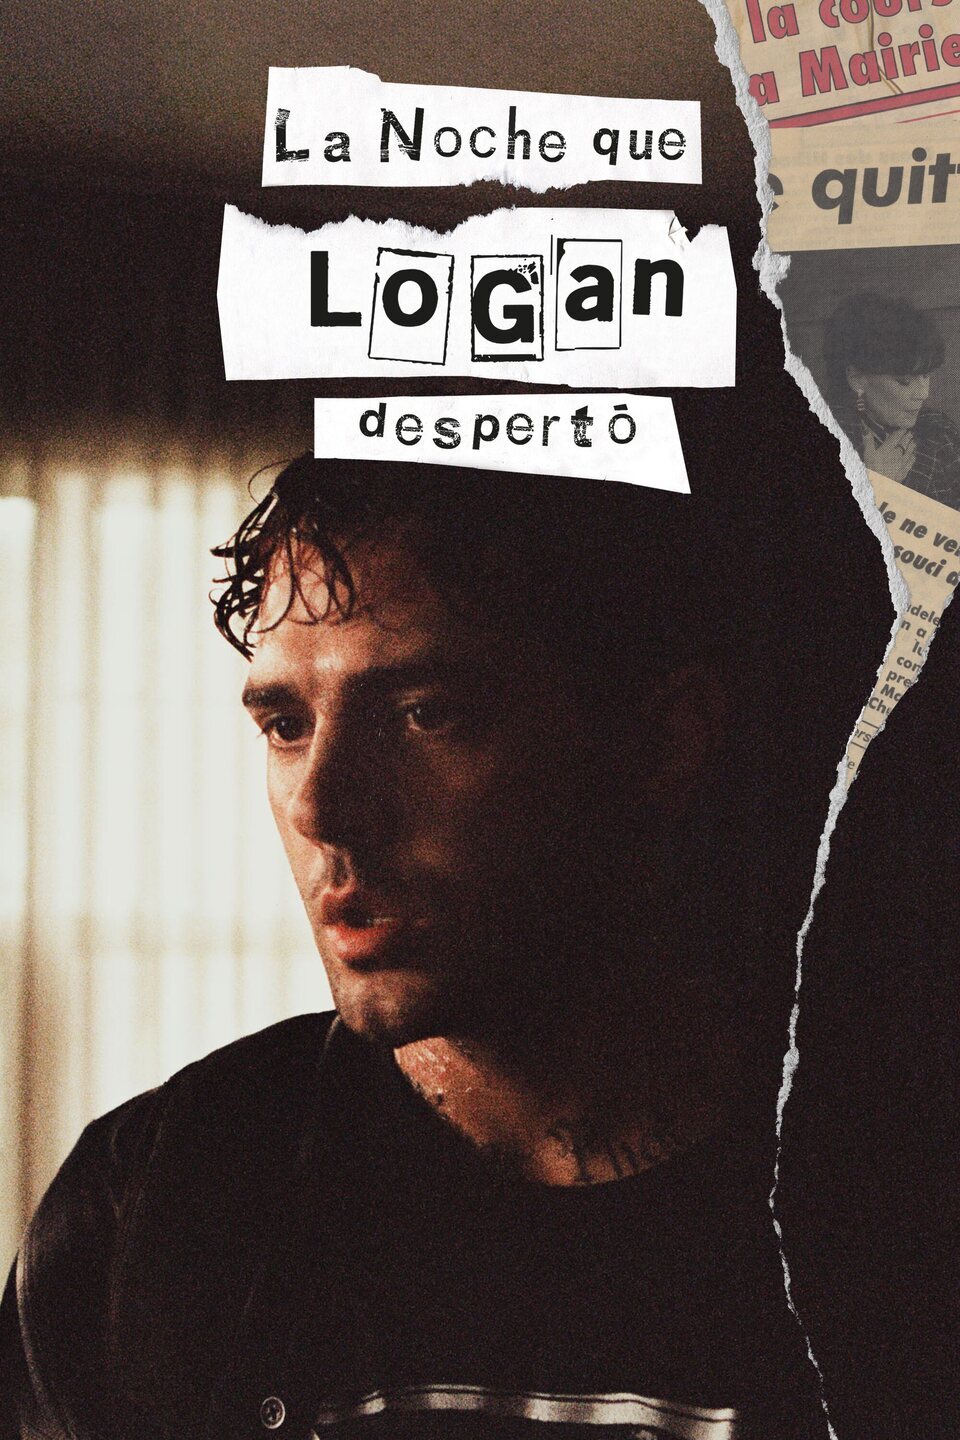 Cartel de La noche que Logan despertó - Cartel español